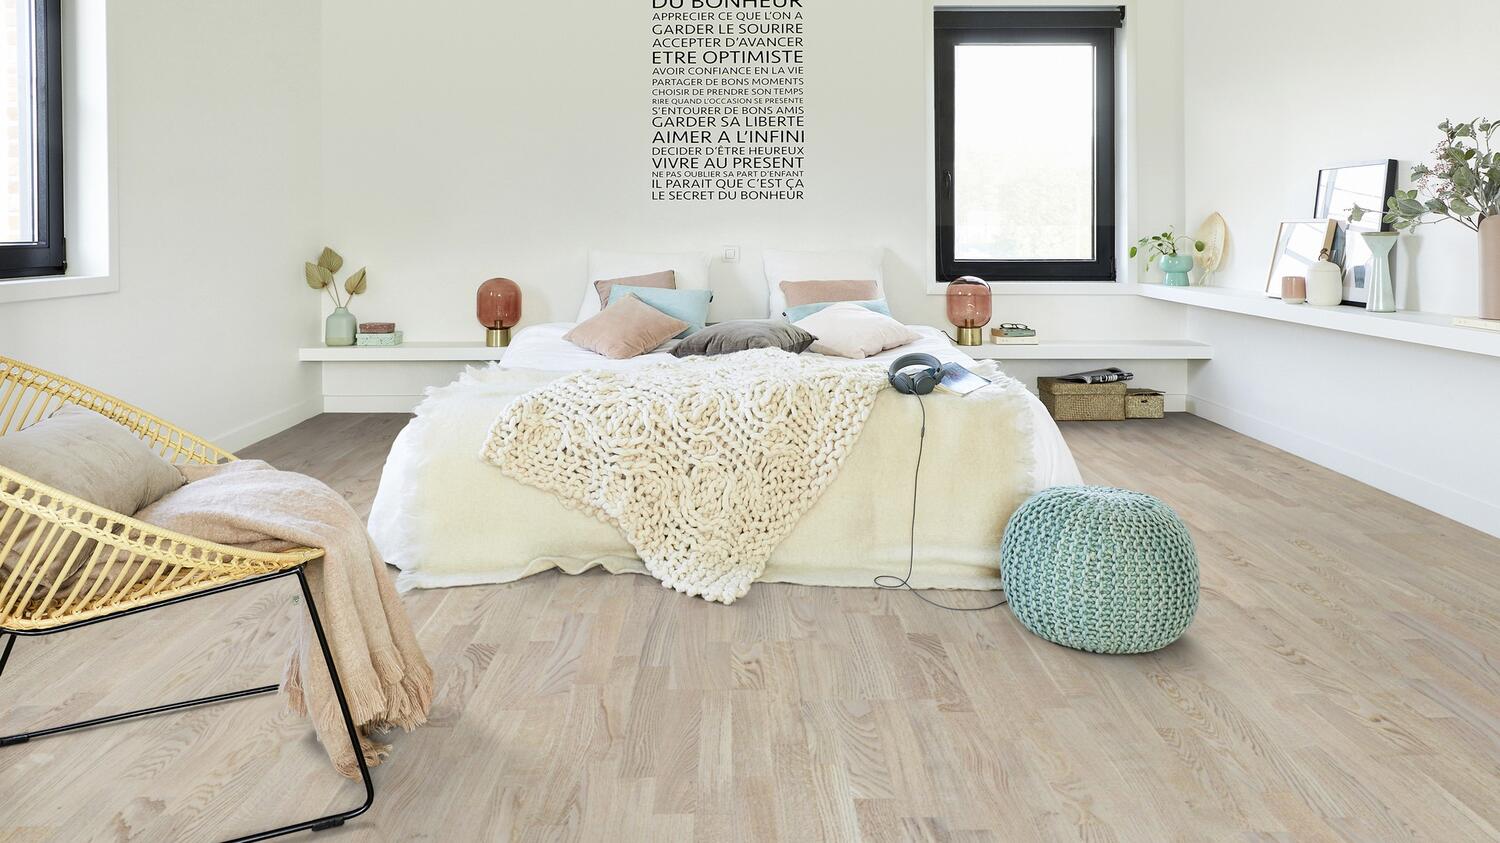 Parchet din lemn bej in dormitor decorat in culori deschise